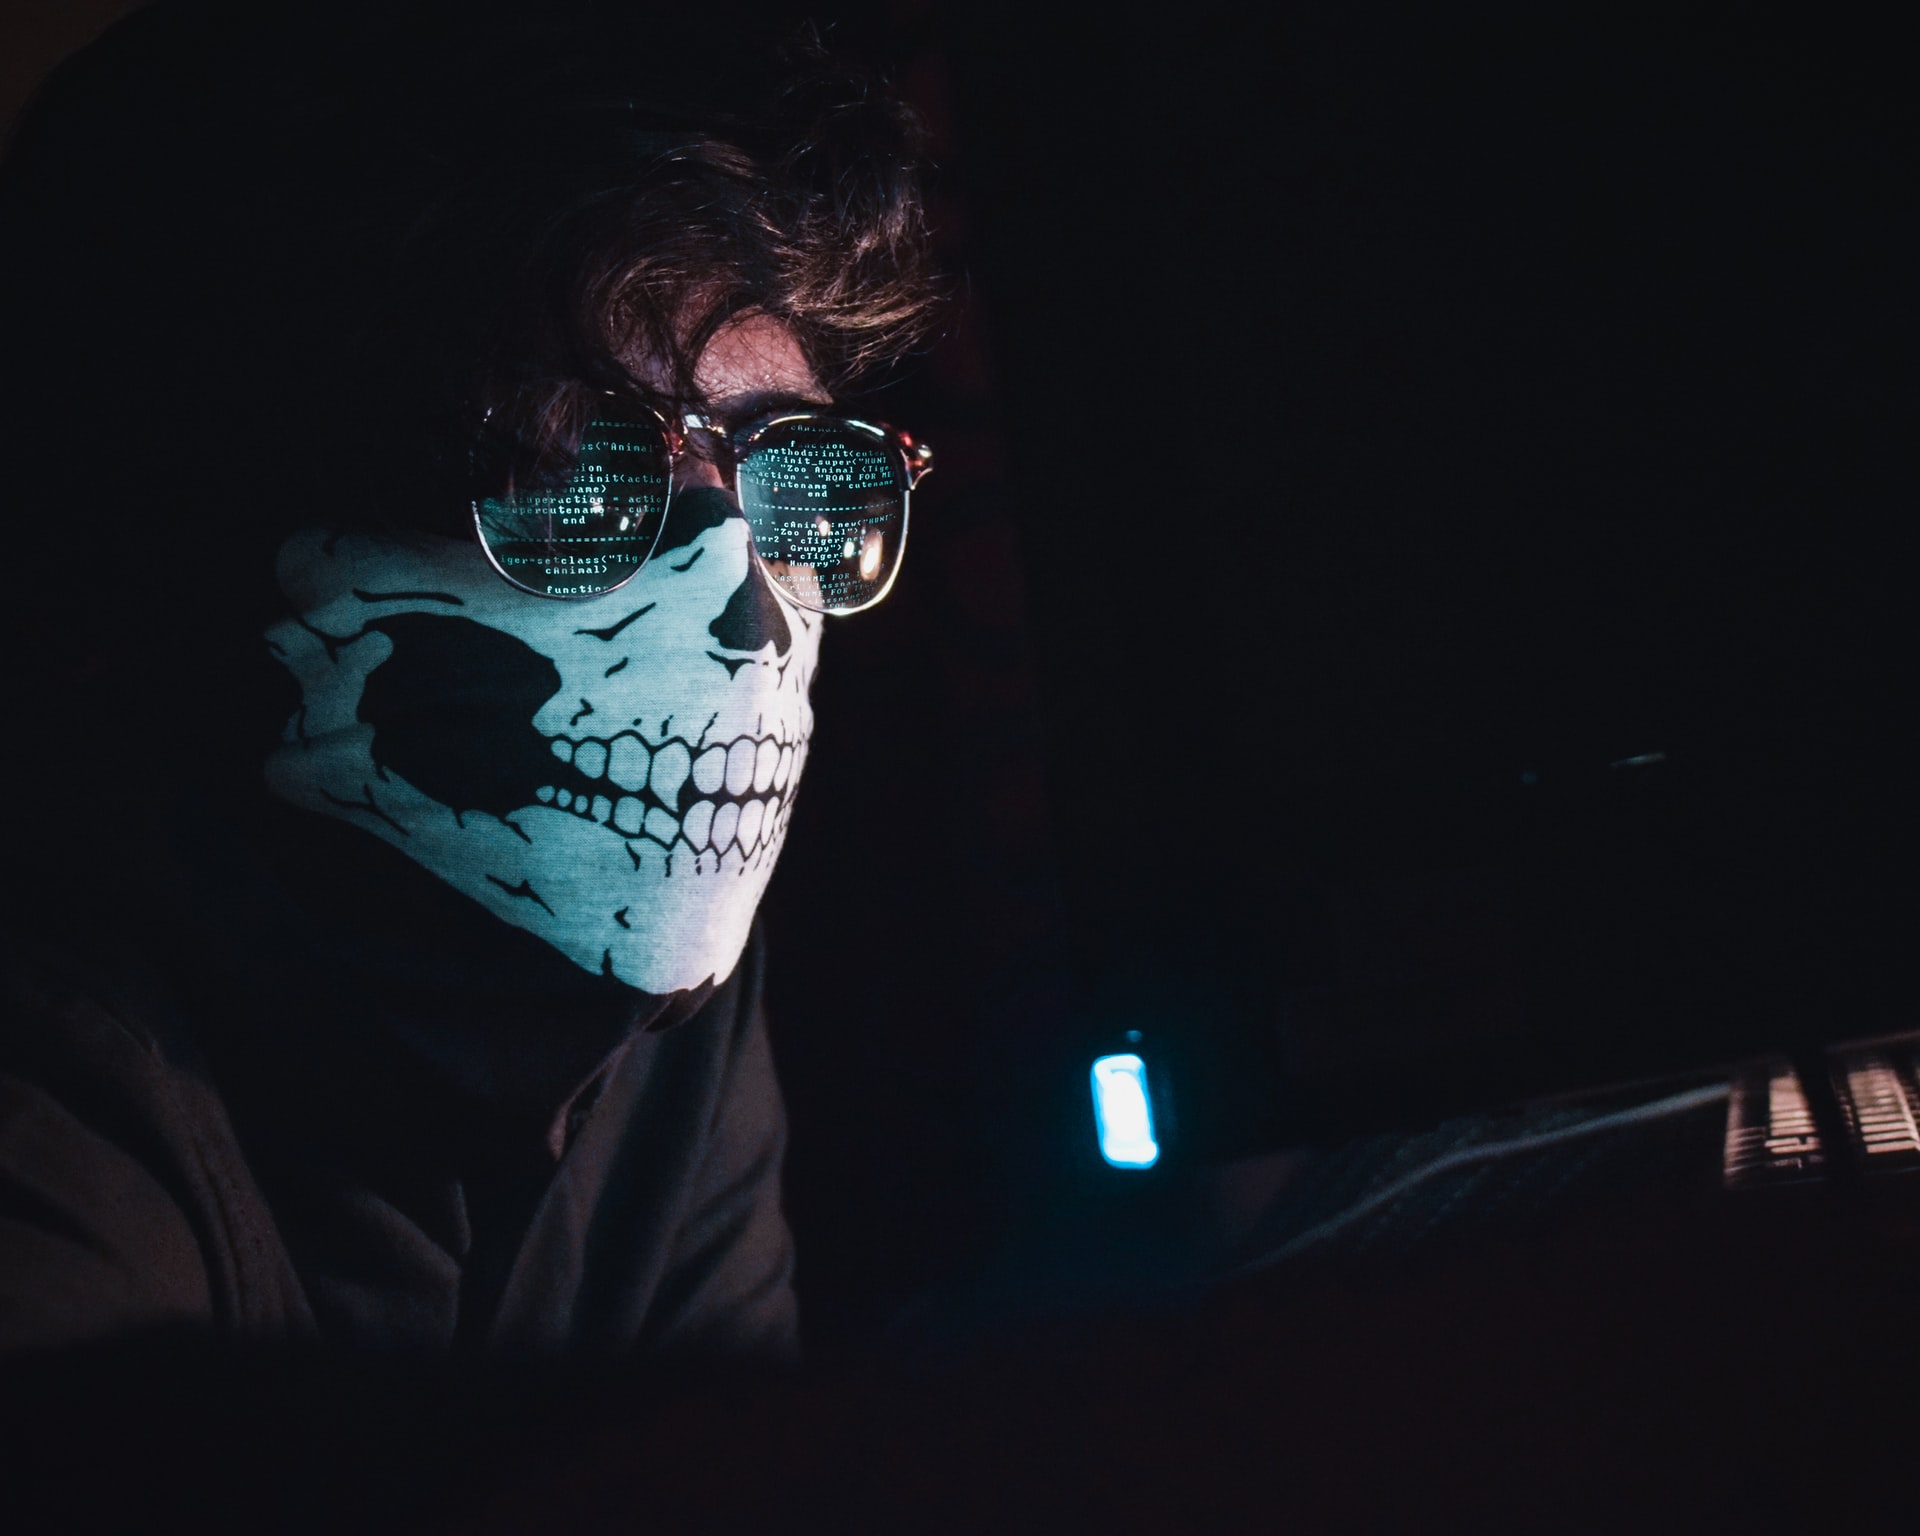 Imagem mostra um homem de máscara e óculos escuros à frente de um computador. Nas lentes dos óculos, está refletida uma tela que mostra várias linhas de códigos de programação